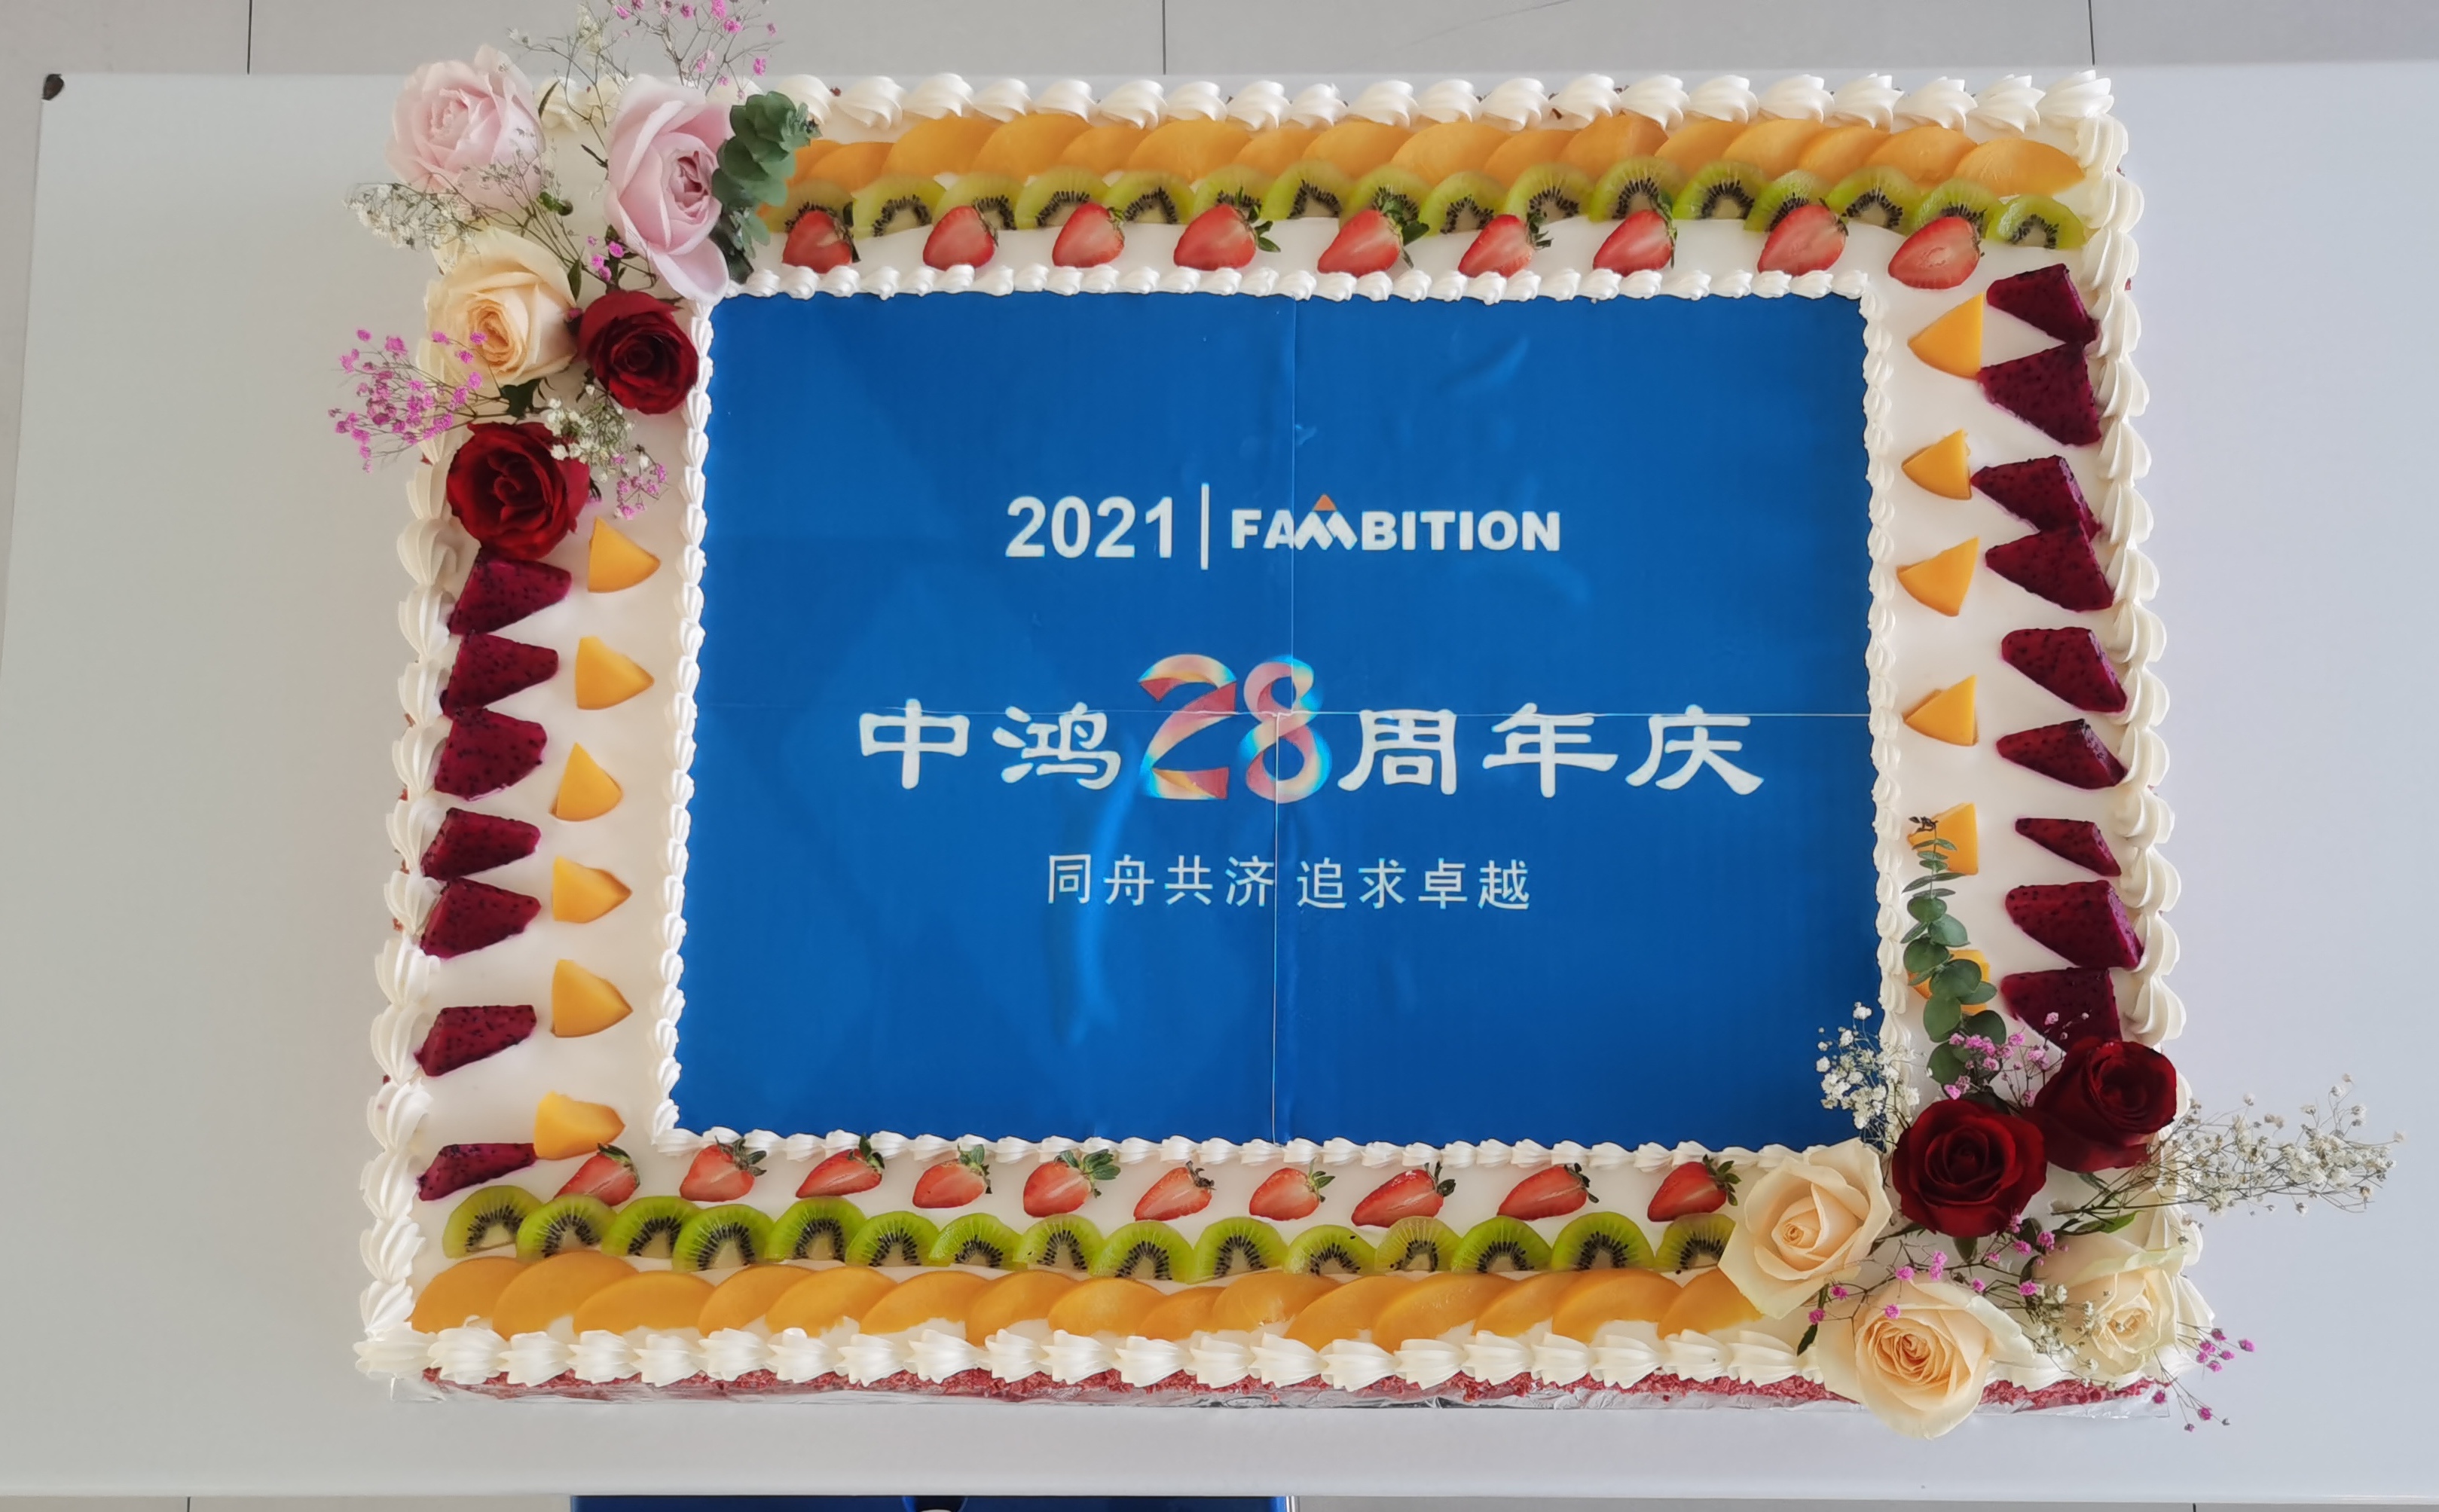 28-летие компании Hambition — речь генерального директора.